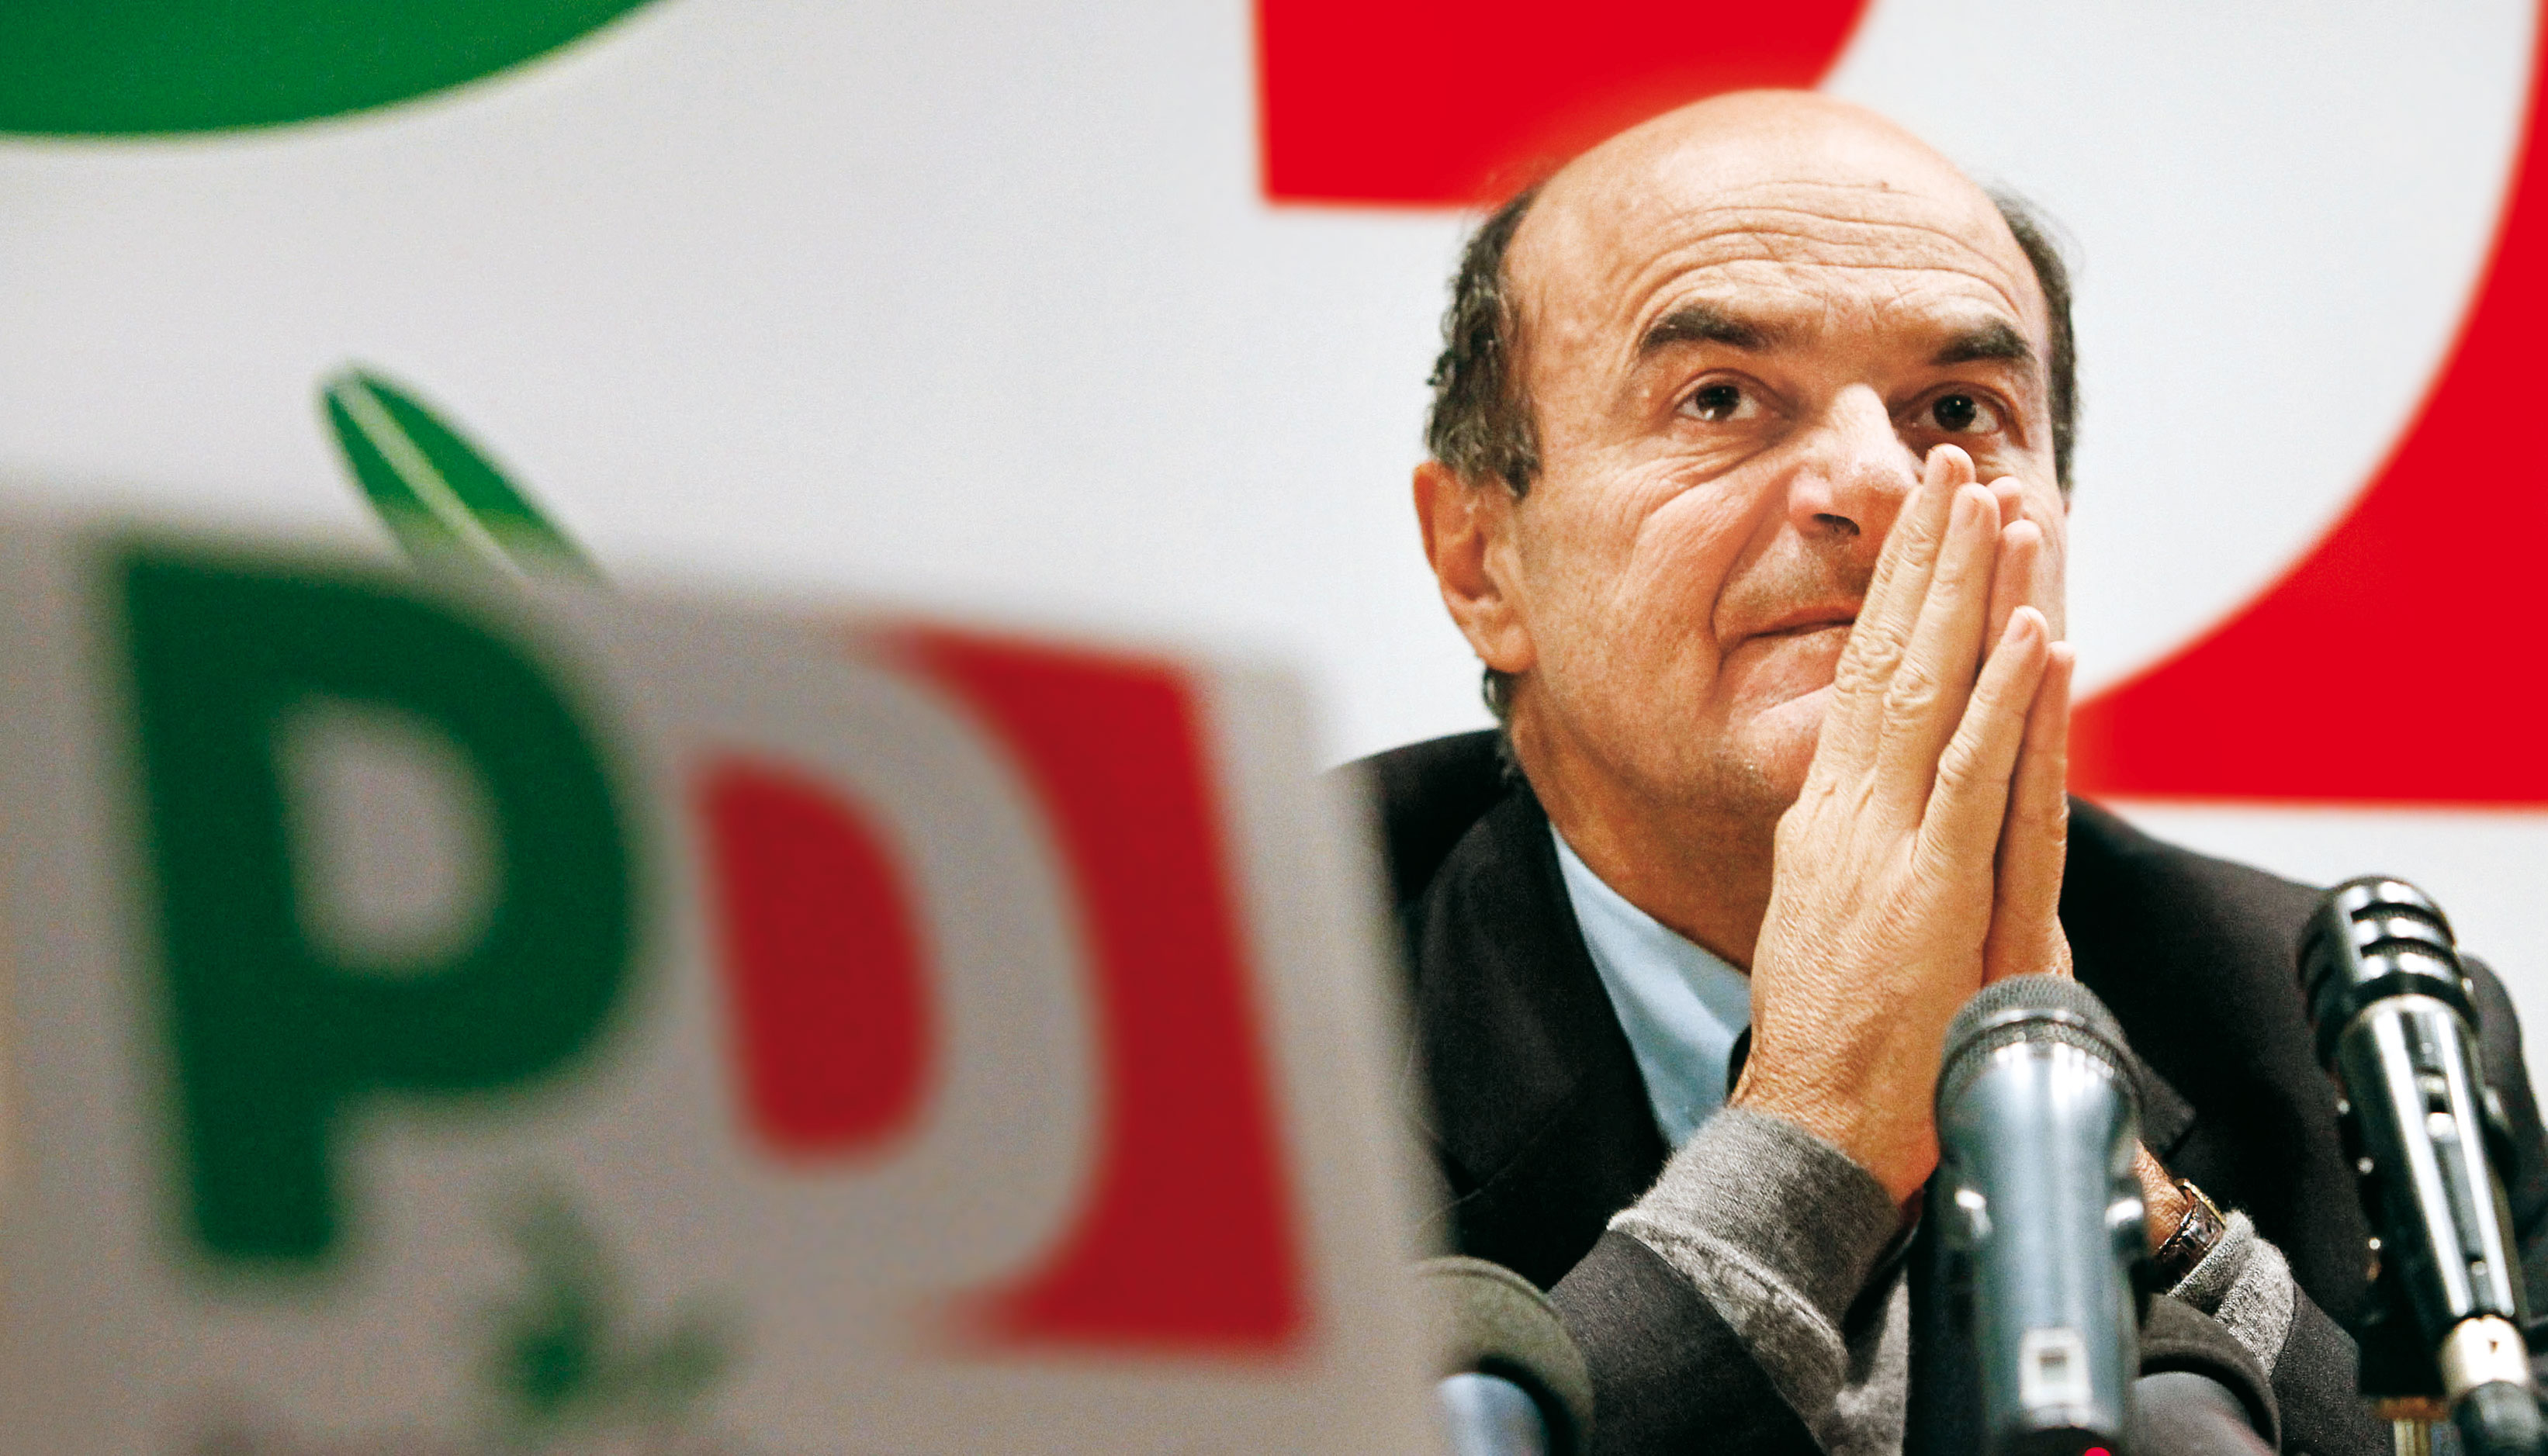 Liste Pd, Bersani annuncia: Rivoluzione rosa, in Parlamento avremo il 40% di donne